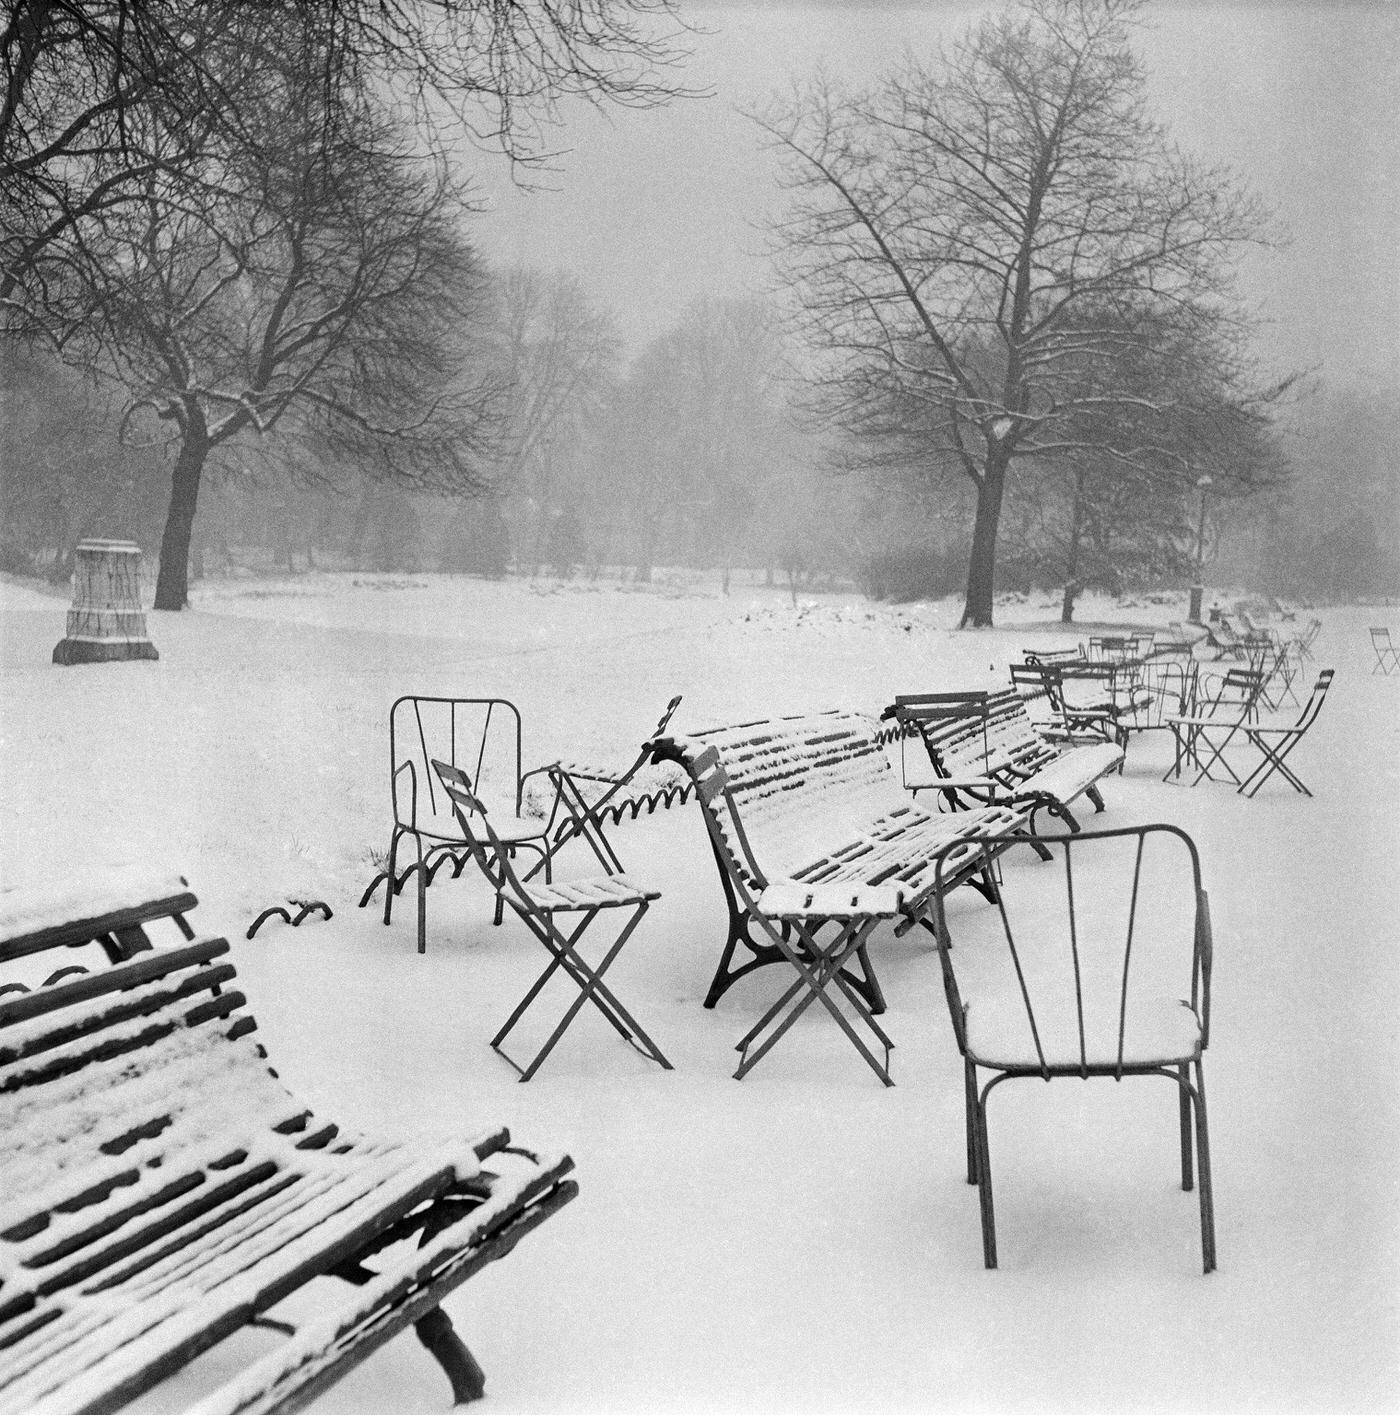 Parc Monceau Under The Snow, Paris, December 26, 1956.